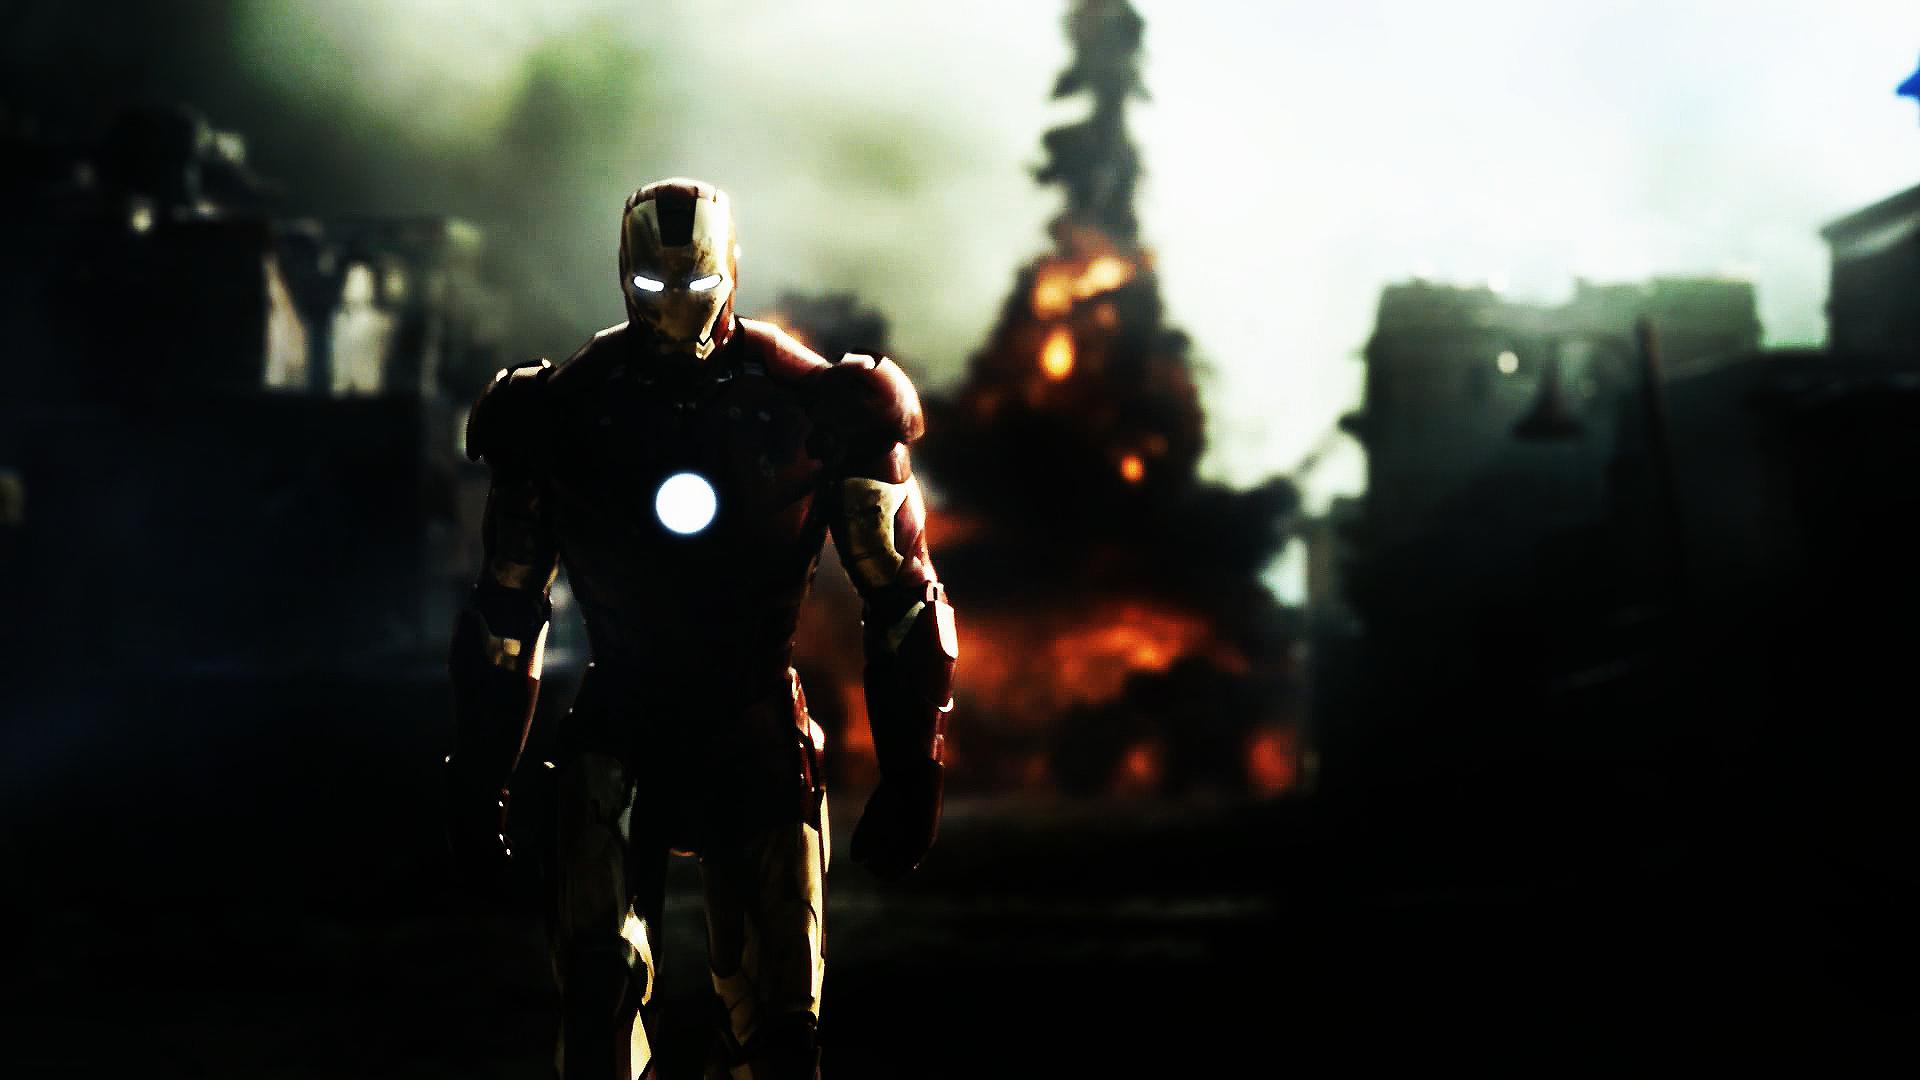 Iron man Movie Wallpaper HD Desktop iPhones Backgrounds